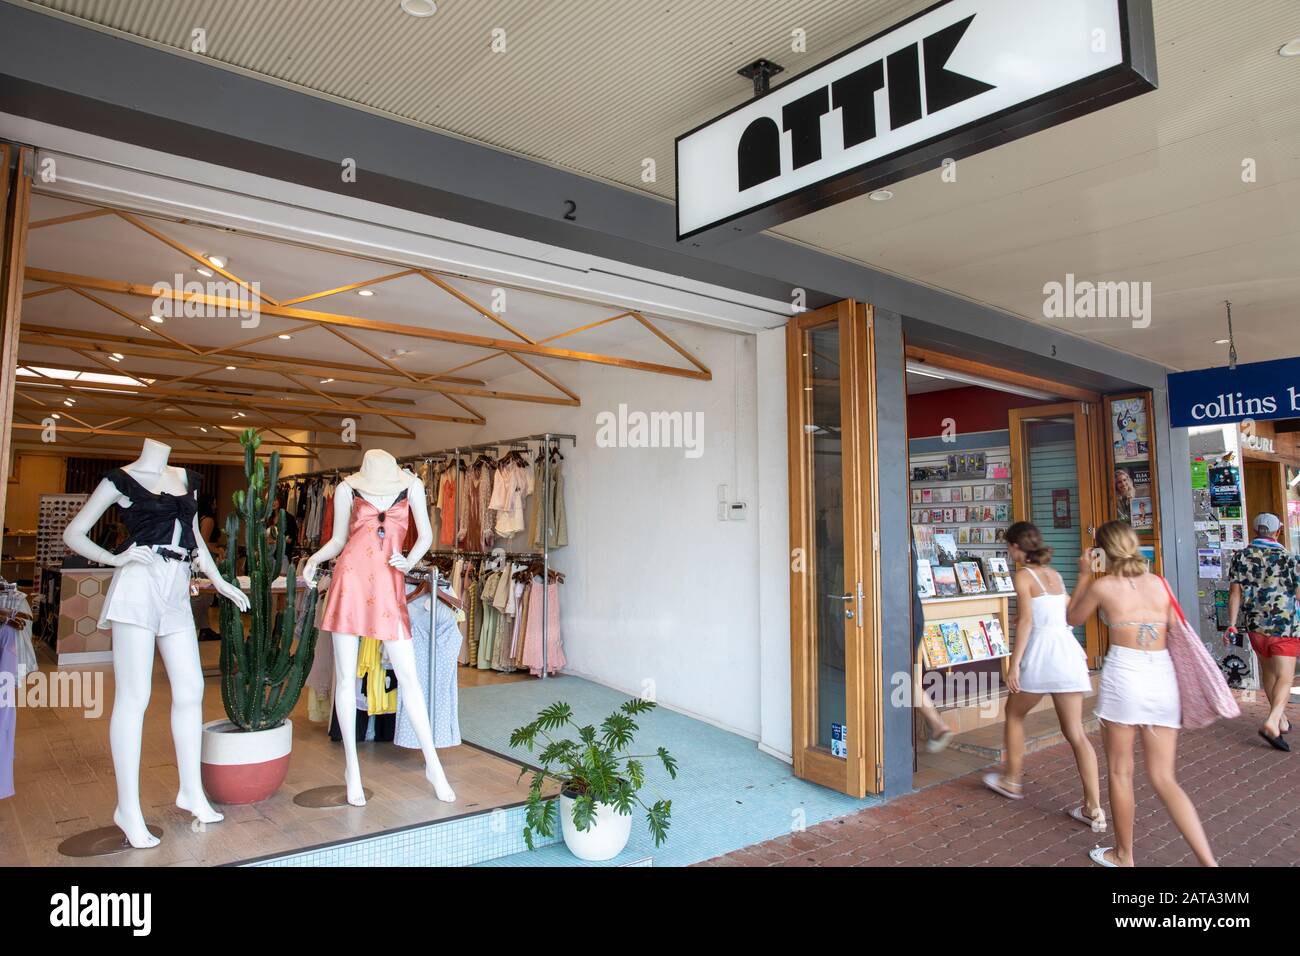 Attik Bekleidungsgeschäft Ladenfront, Byron Bay, Australien an einem Sommertag Stockfoto